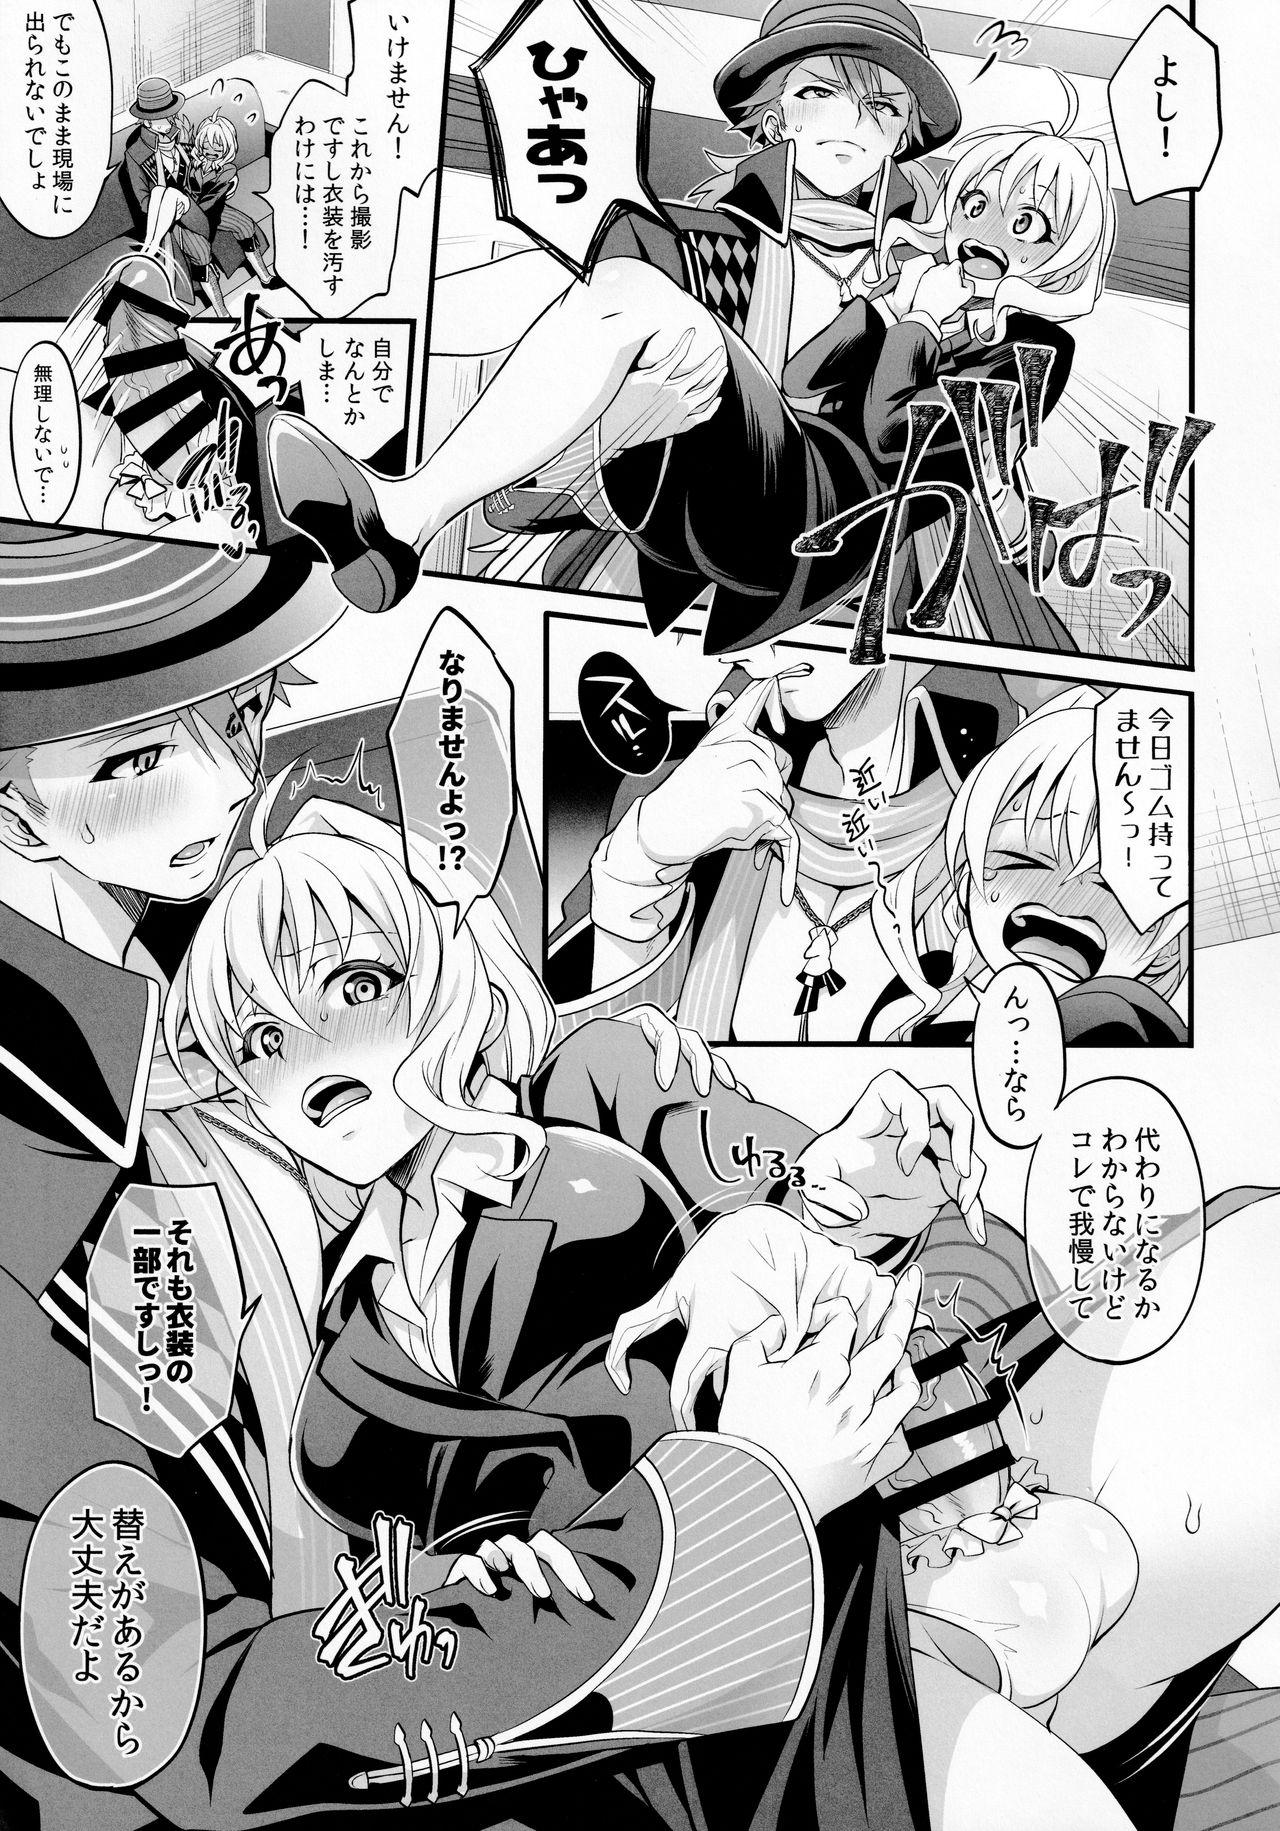 Nurse Watashi no Ochinchin ga Amaeta Gatterun desu! - Idolish7 Deutsch - Page 7